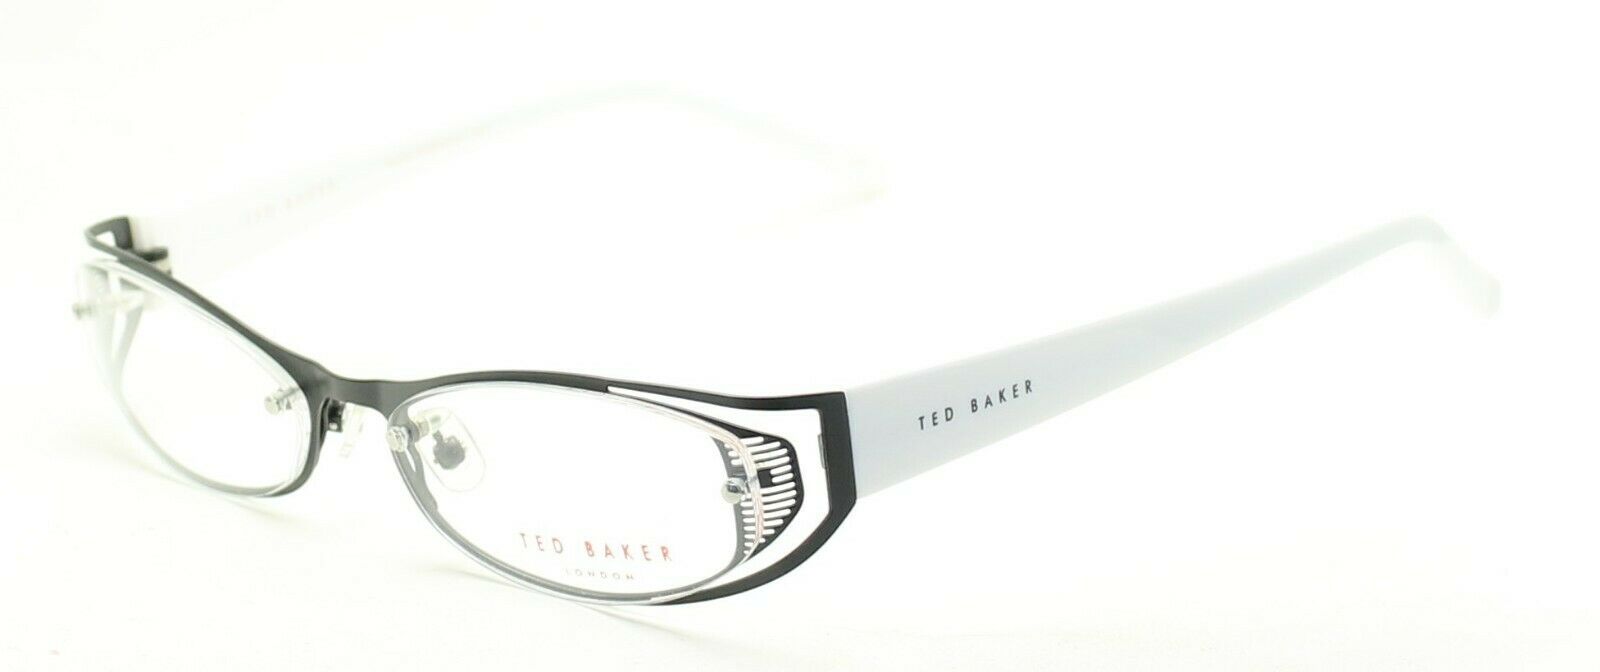 TED BAKER 2160 008 Hip 2 Hip 54mm Eyewear FRAMES Glasses RX Optical Eyeglasses